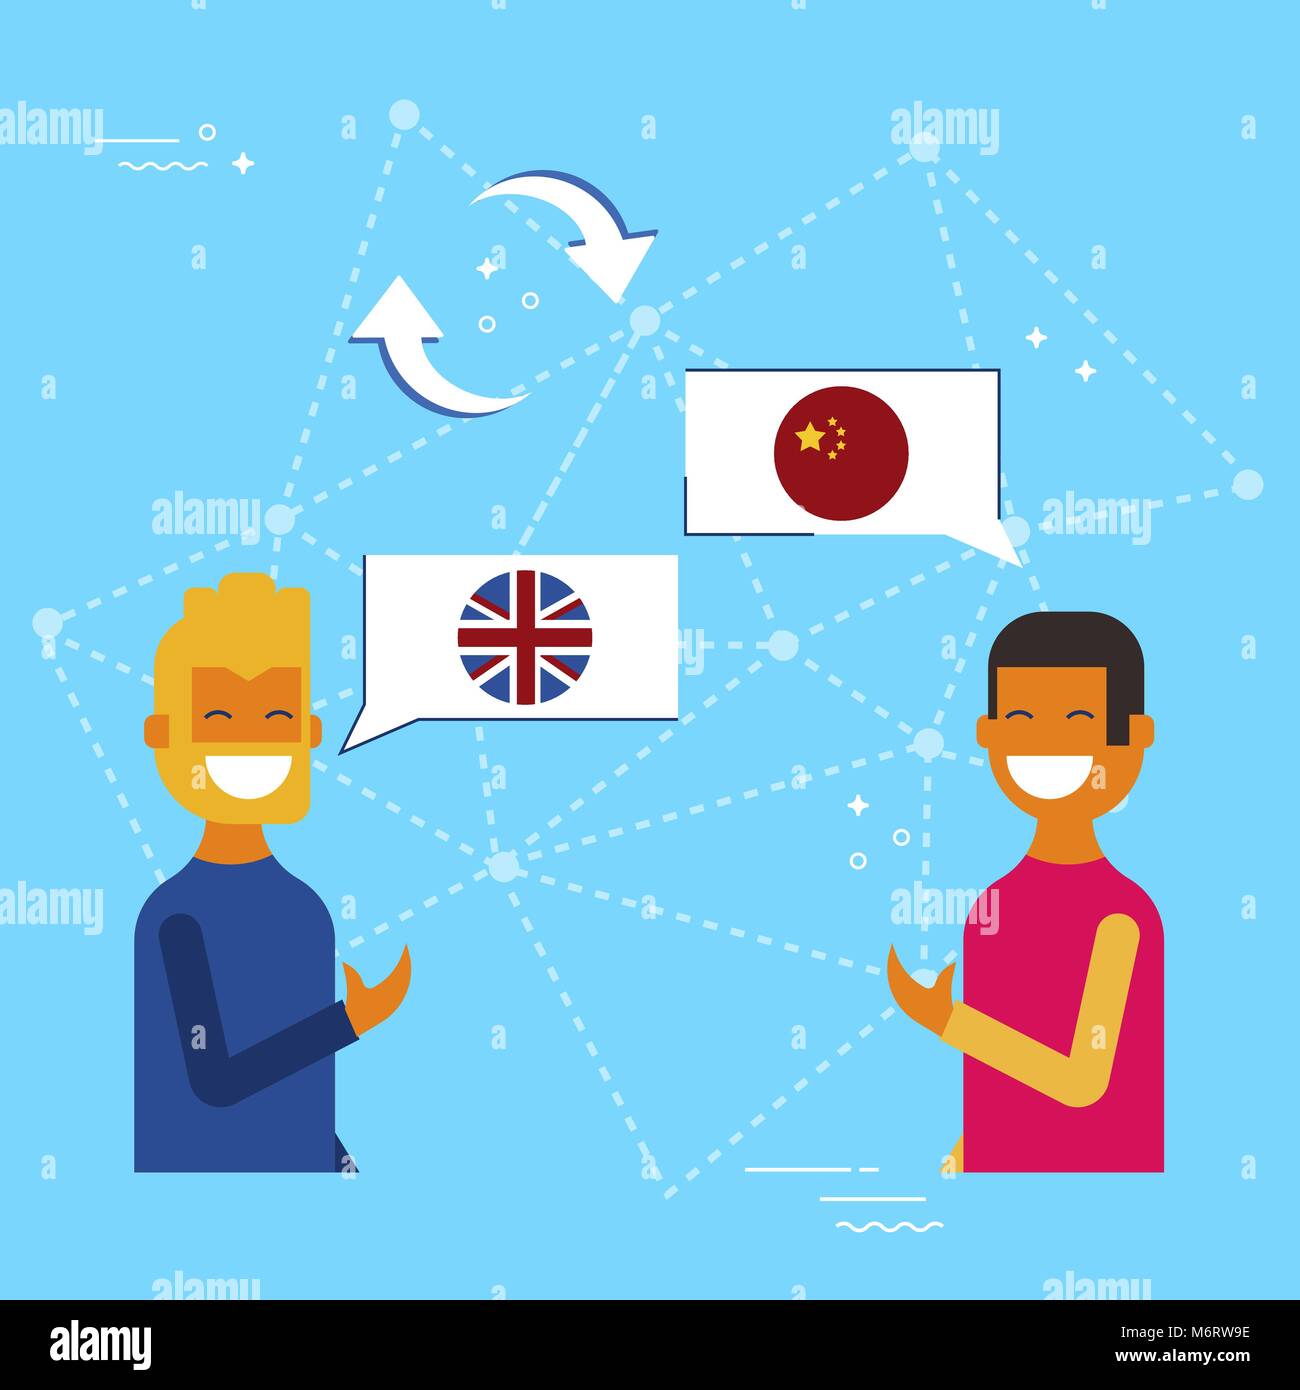 Kommunikation Übersetzung Konzeption Illustration, modernen Stil. Freunde in on-line-Gespräch auf Chinesisch ins Englische Sprache. EPS 10 Vektor Stock Vektor